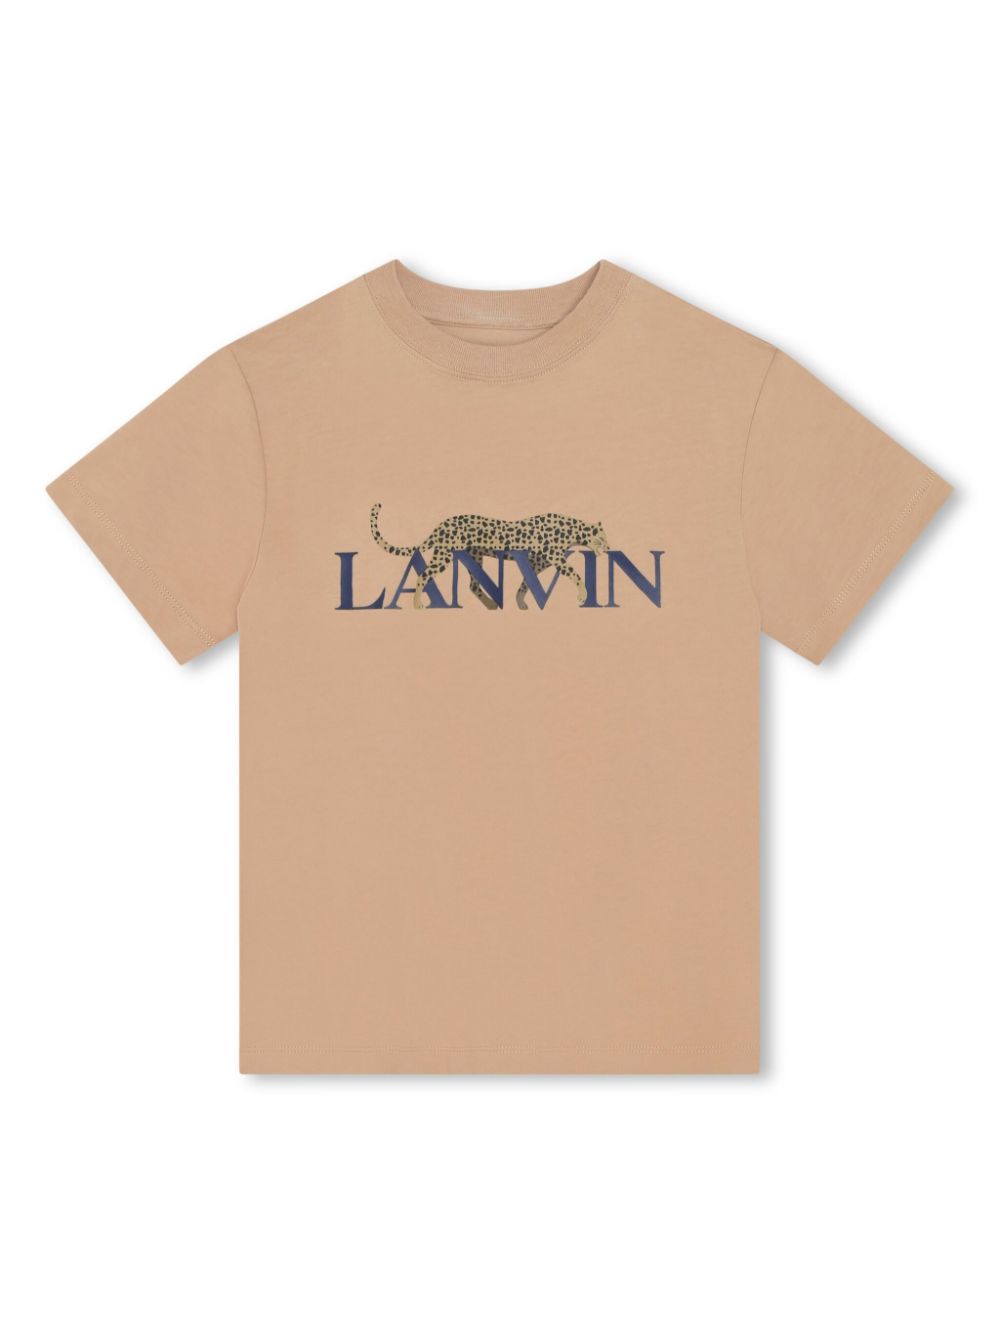 Lanvin Enfant leopard-print cotton T-shirt - Neutrals von Lanvin Enfant